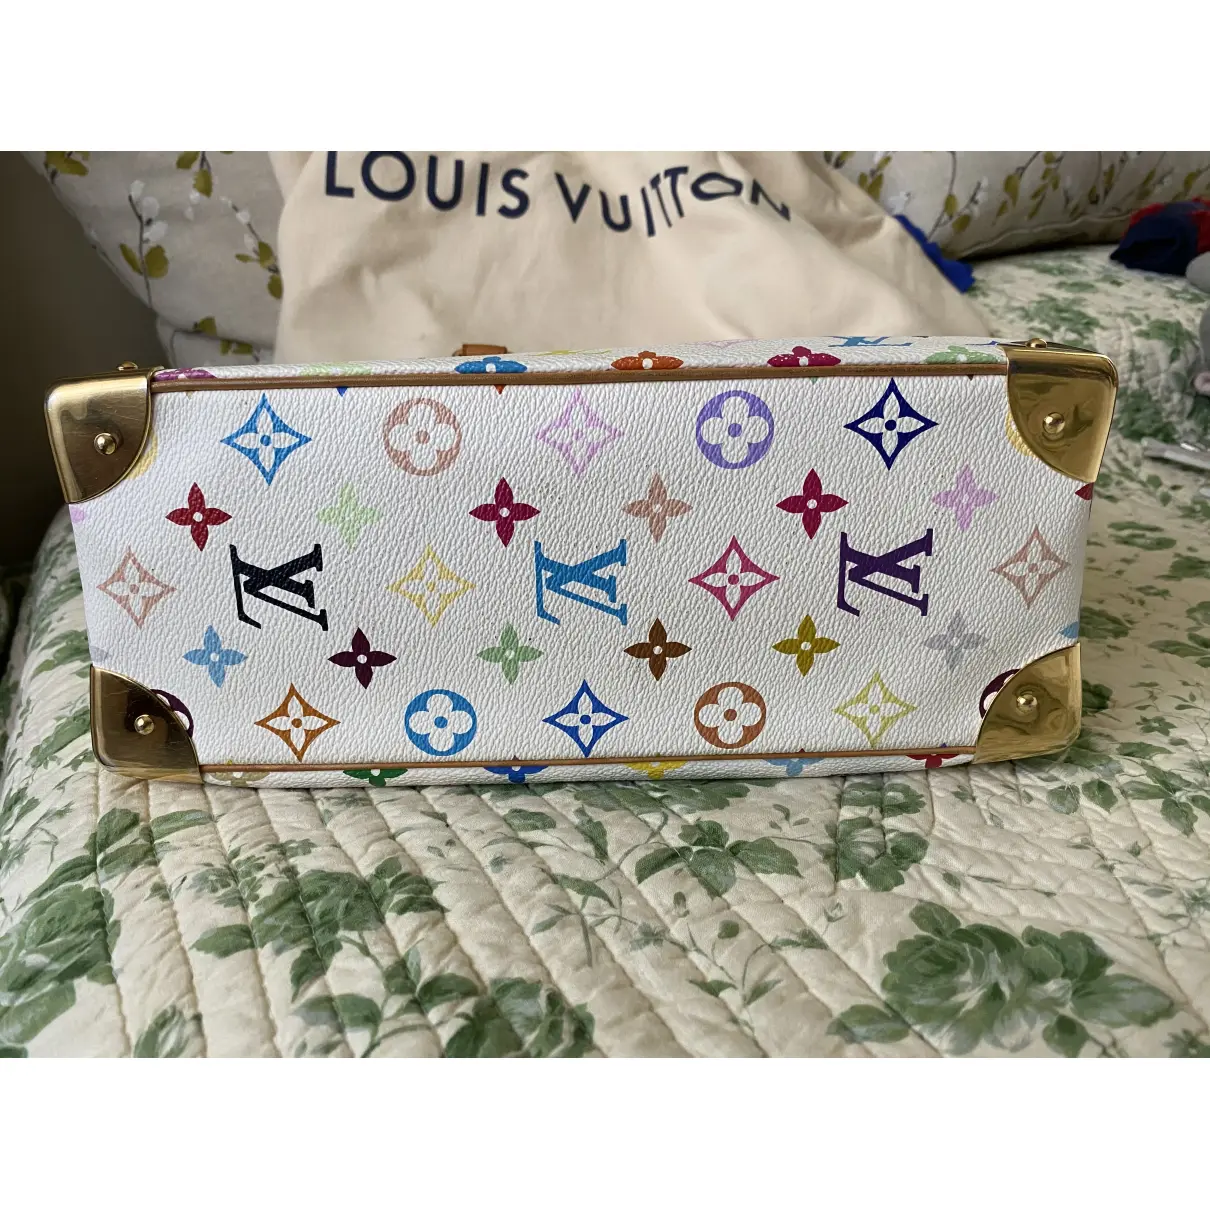 Deauville cloth handbag Louis Vuitton - Vintage